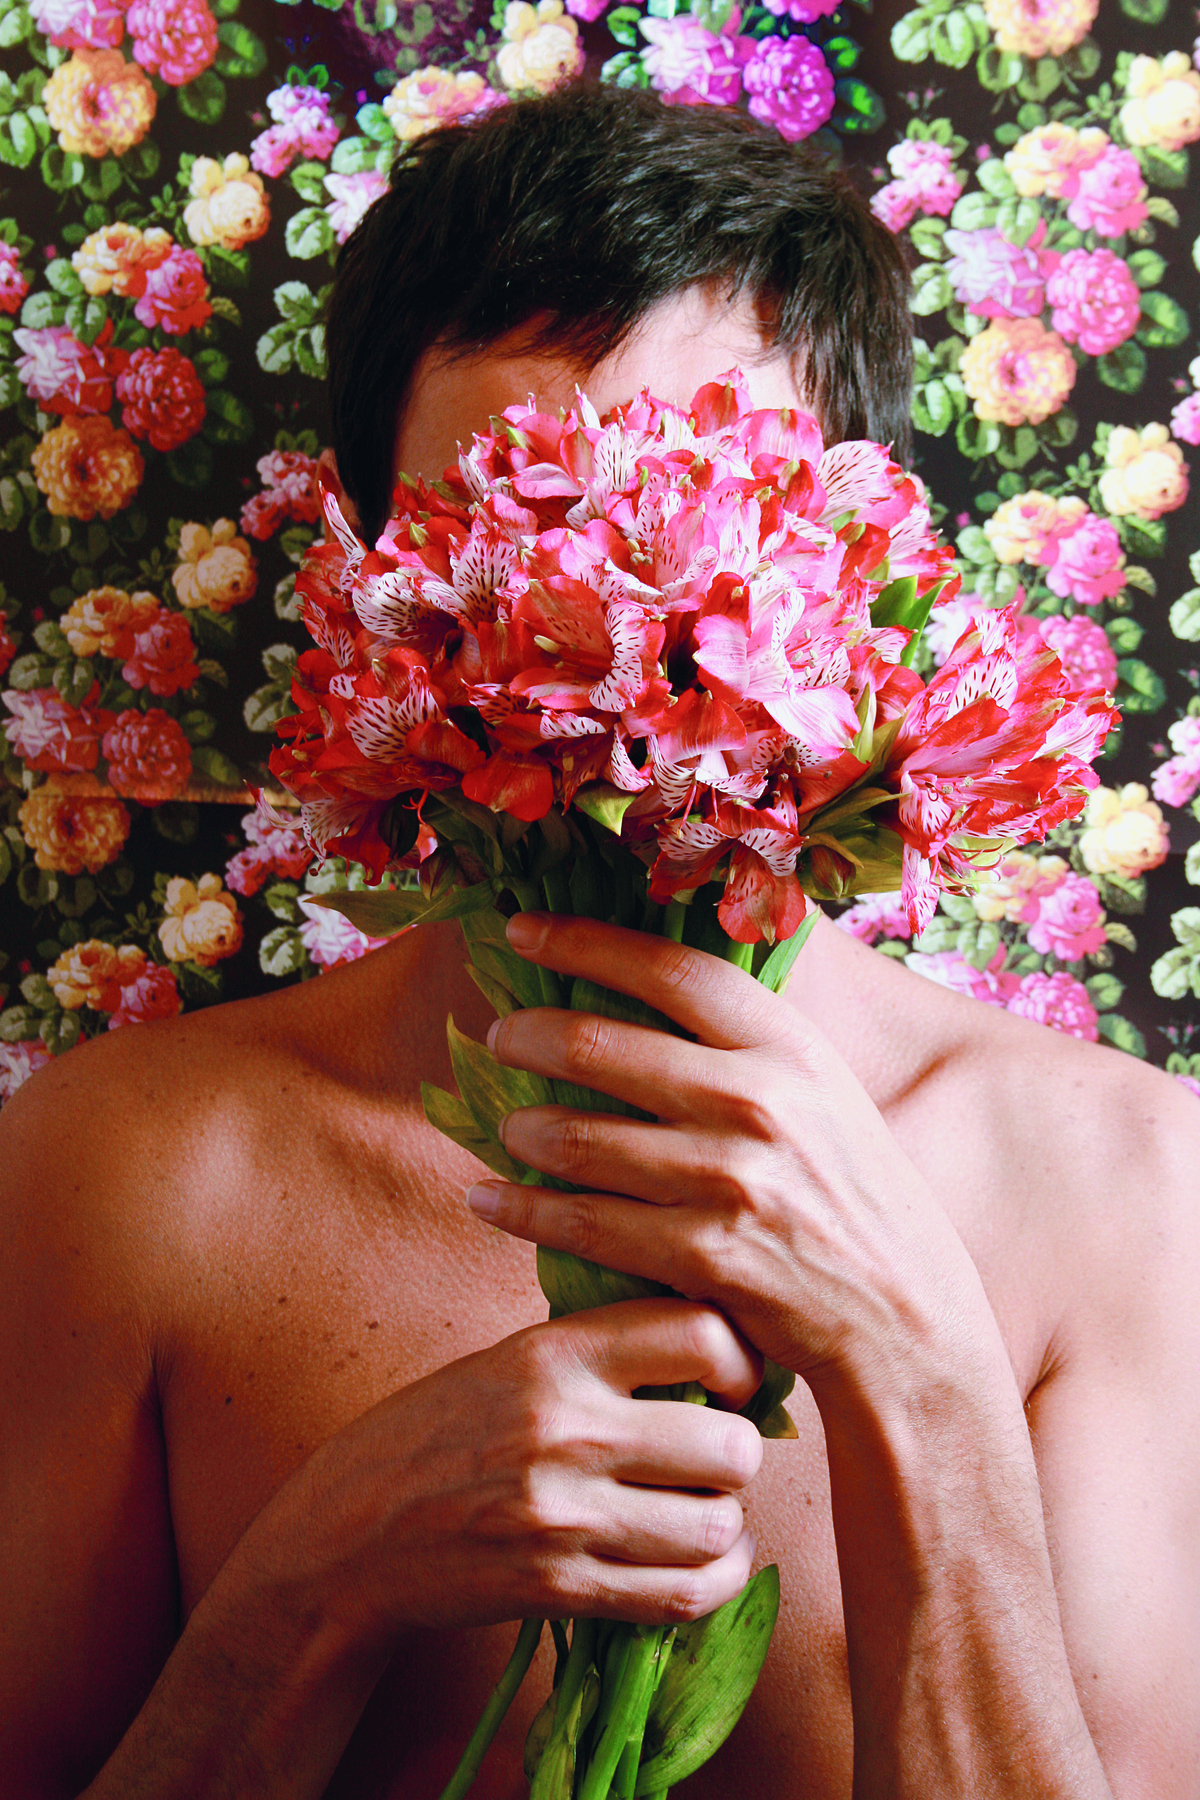 Fotografia. Busto de um homem com cabelos curtos, segurando com as mãos um buquê de flores de cor-de-rosa, cobrindo o rosto. Atrás dele, um mural com diversas flores em cores rosa e amarela.